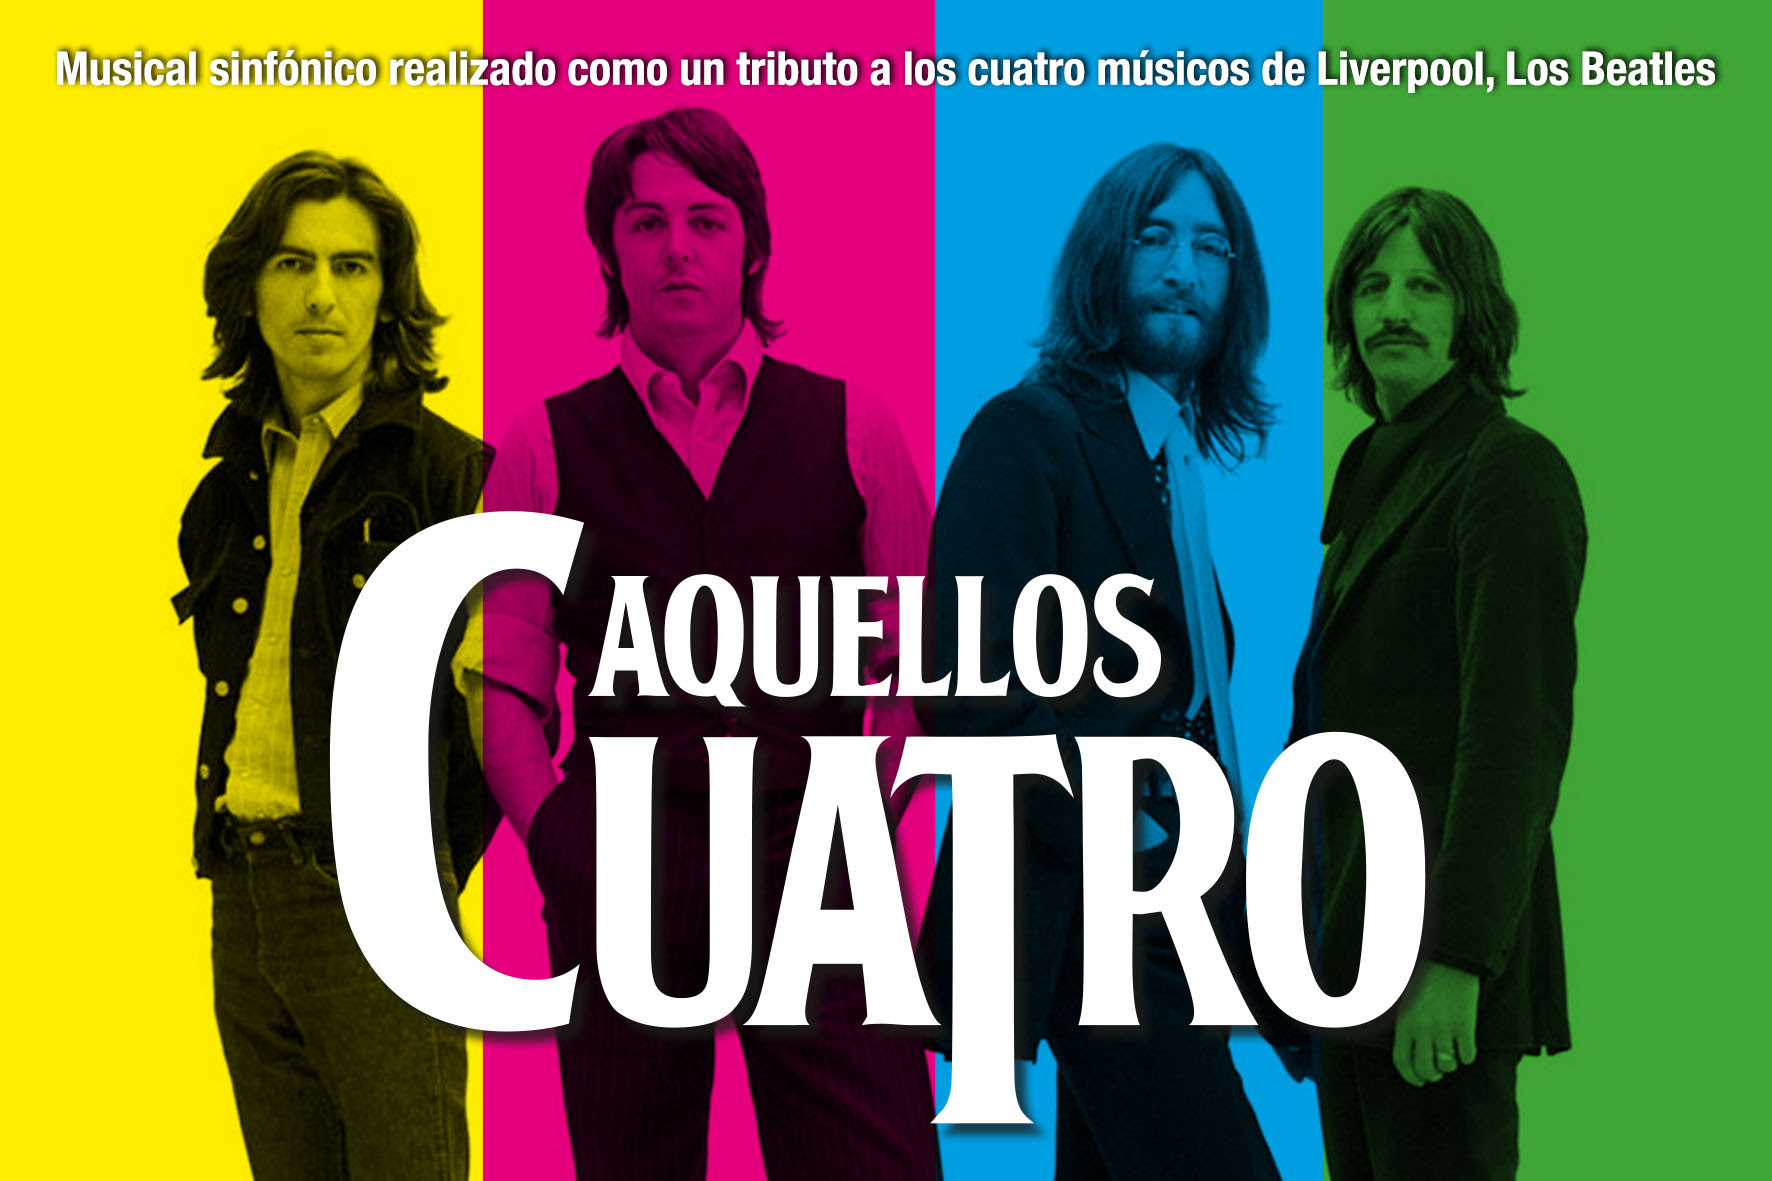 En homenaje a Los Beatles la Orquesta Sinfónica de Venezuela presenta el concierto “Aquellos cuatro”